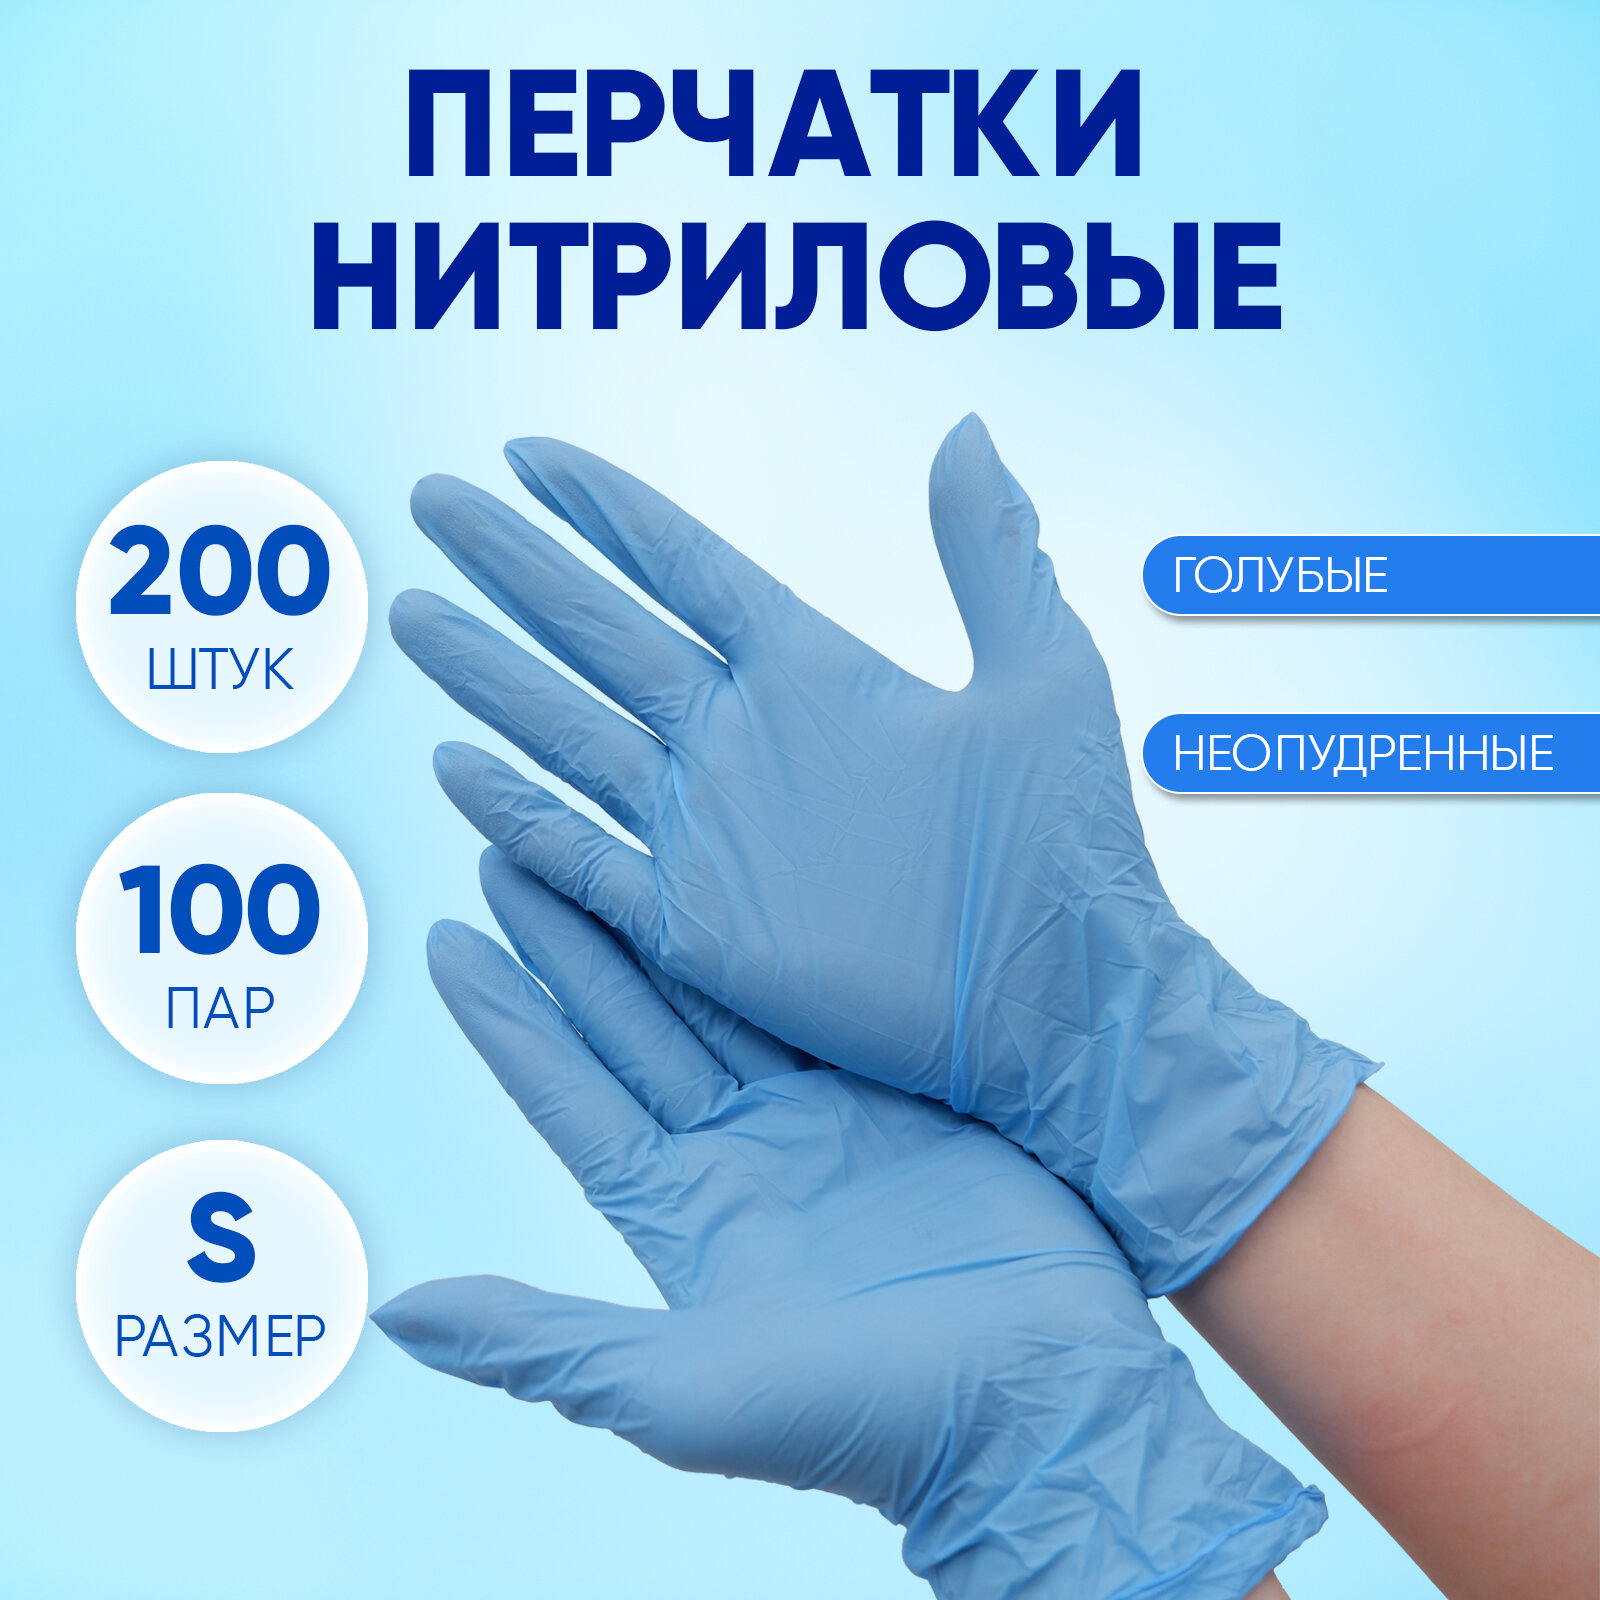 Перчатки нитриловые одноразовые голубые, Optiline, размер S, упаковка 200 штук